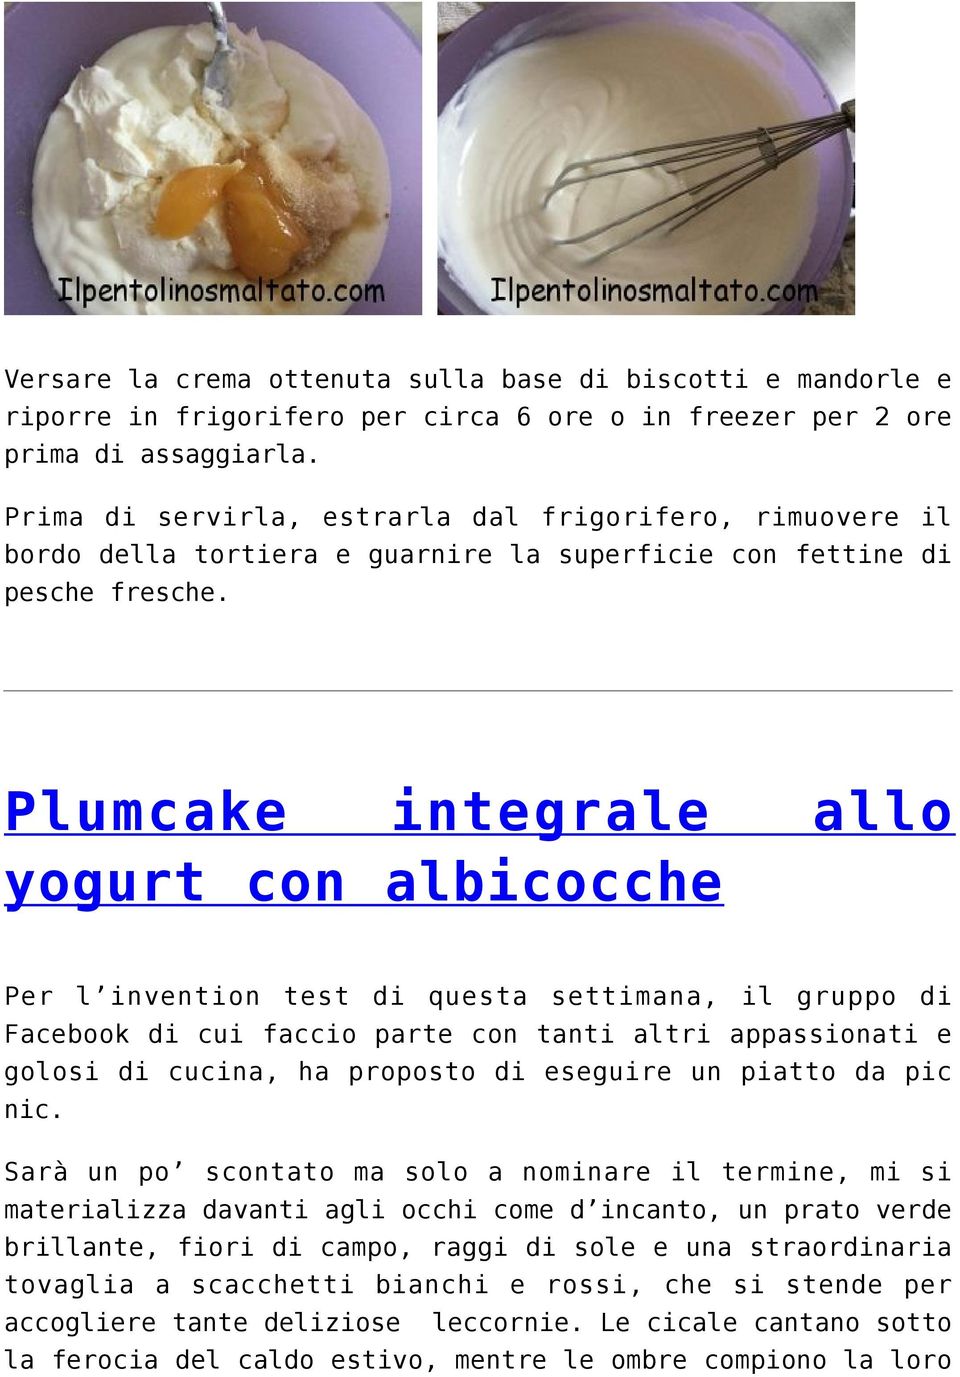 Plumcake integrale allo yogurt con albicocche Per l invention test di questa settimana, il gruppo di Facebook di cui faccio parte con tanti altri appassionati e golosi di cucina, ha proposto di